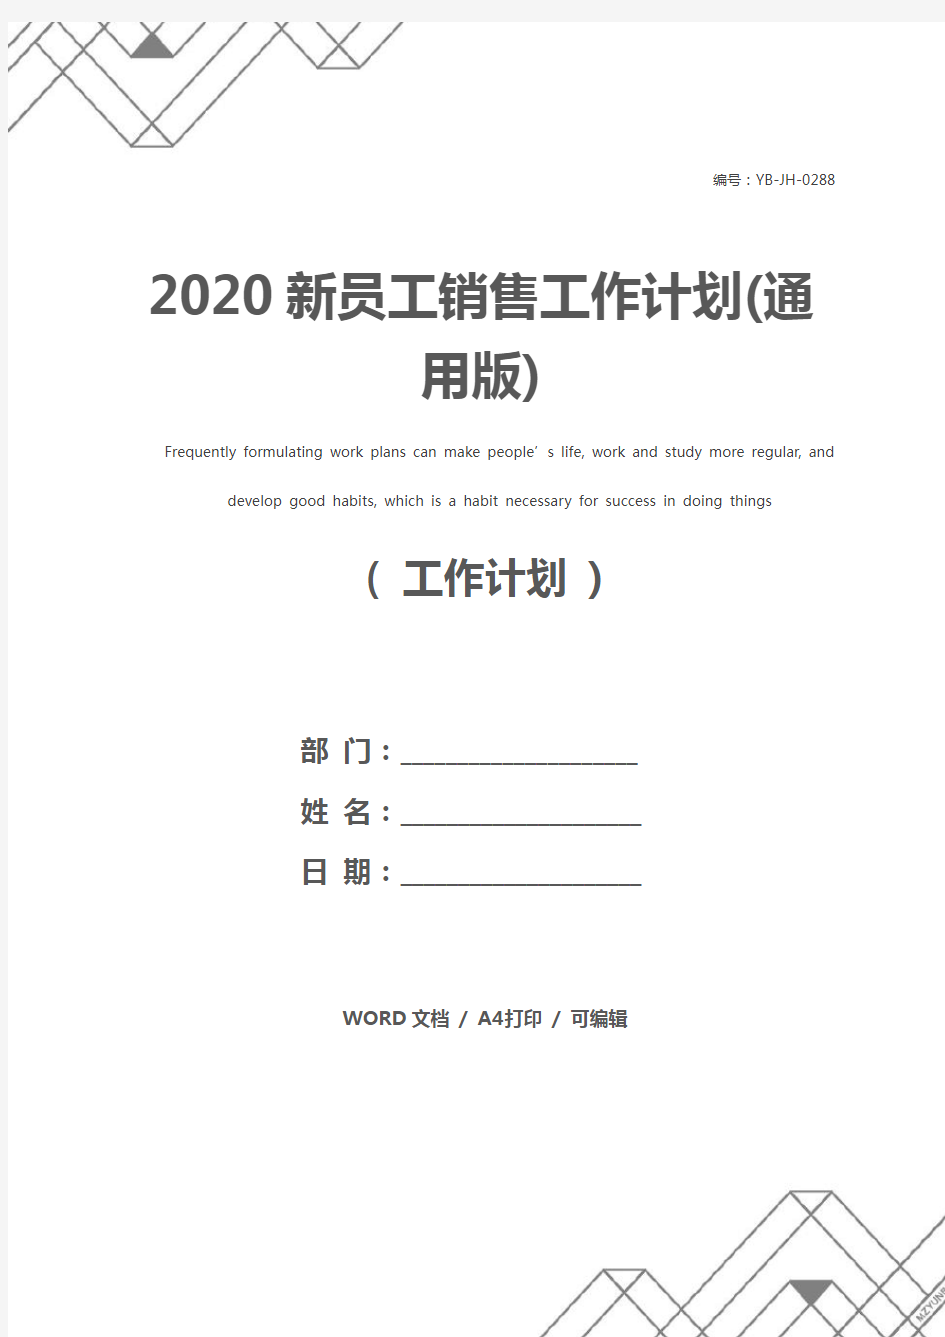 2020新员工销售工作计划(通用版)